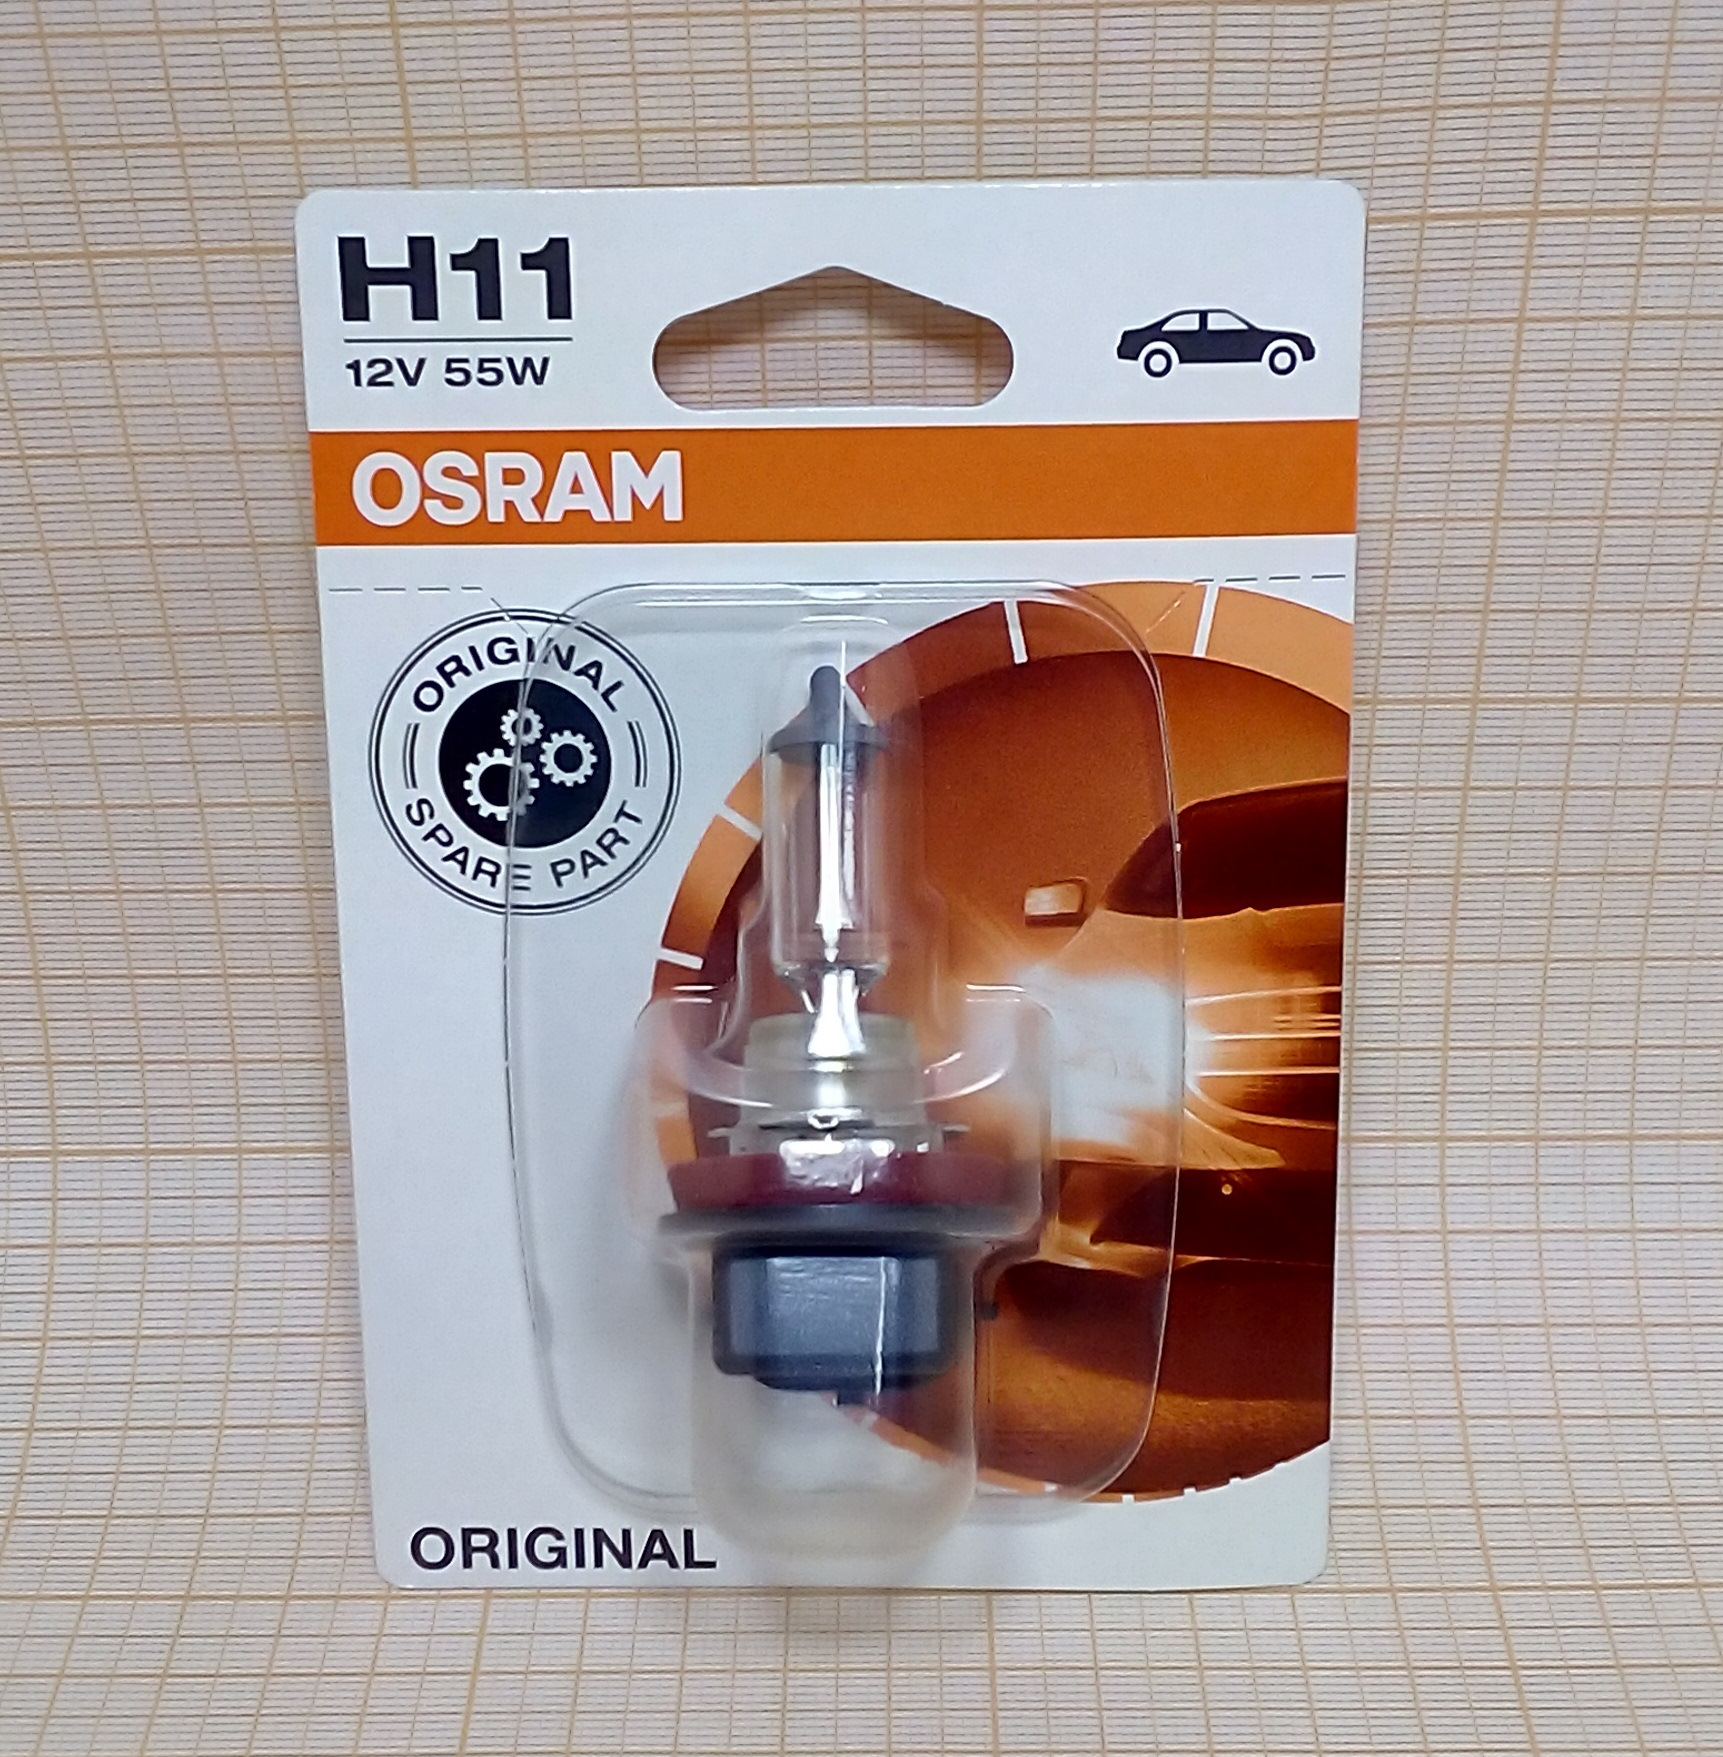 H11 12v купить. Osram h11 55w. Лампа н11 Осрам. Лампа н11 12v 55w Osram. Лампа галогенная h11 (одиночный блистер) Osram.